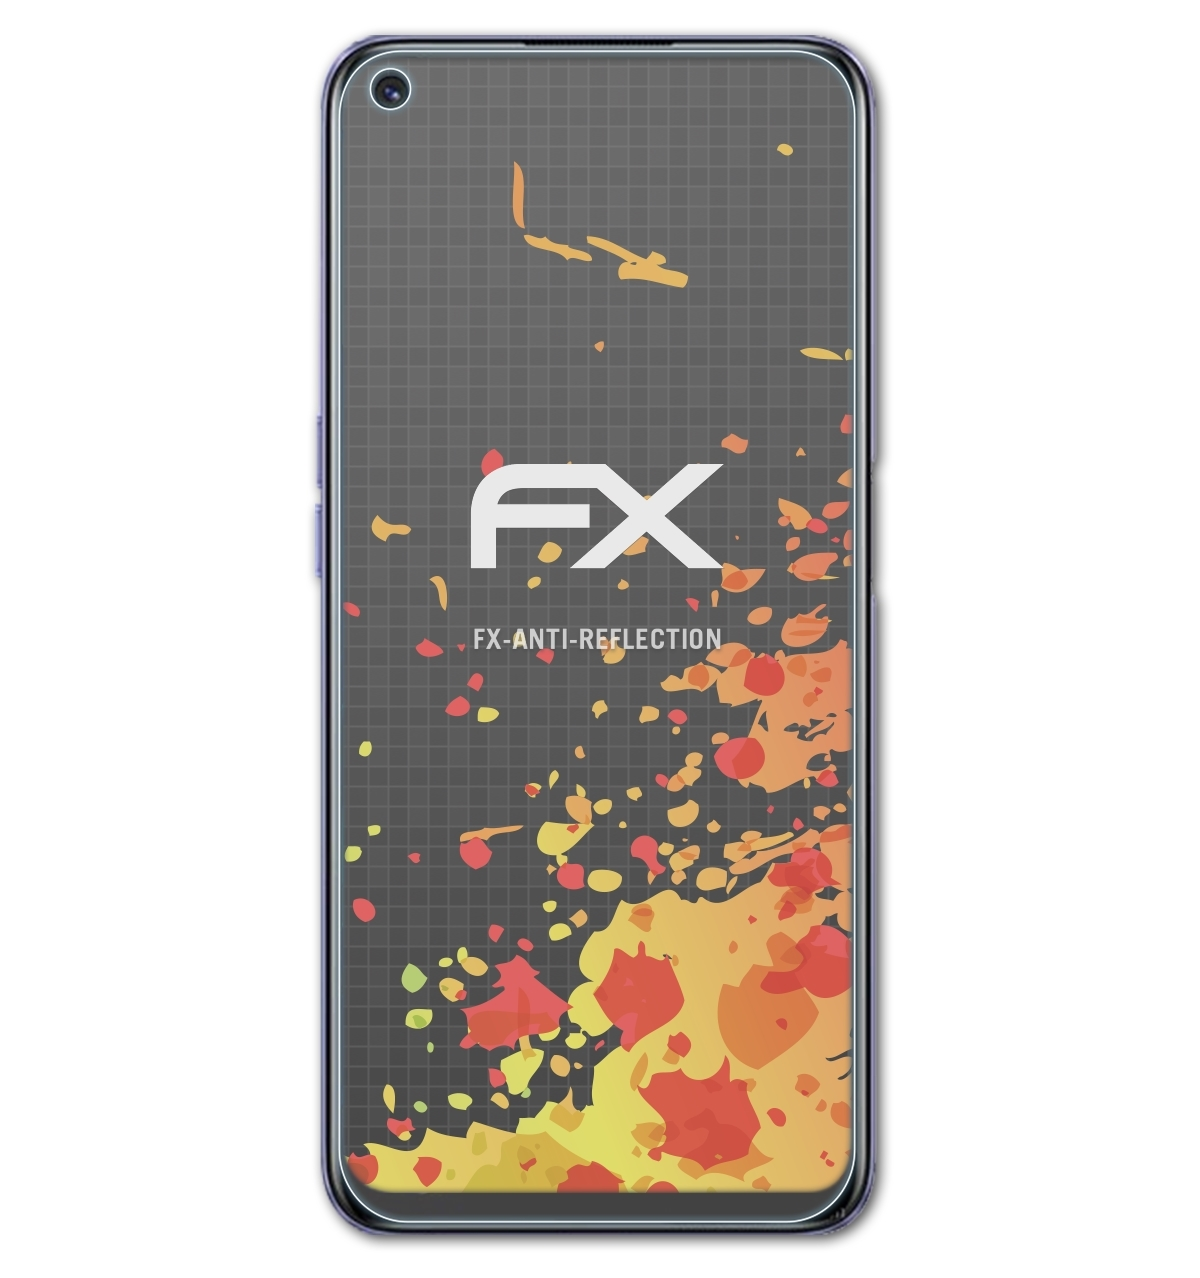 ATFOLIX 3x FX-Antireflex Q3s) Realme Displayschutz(für